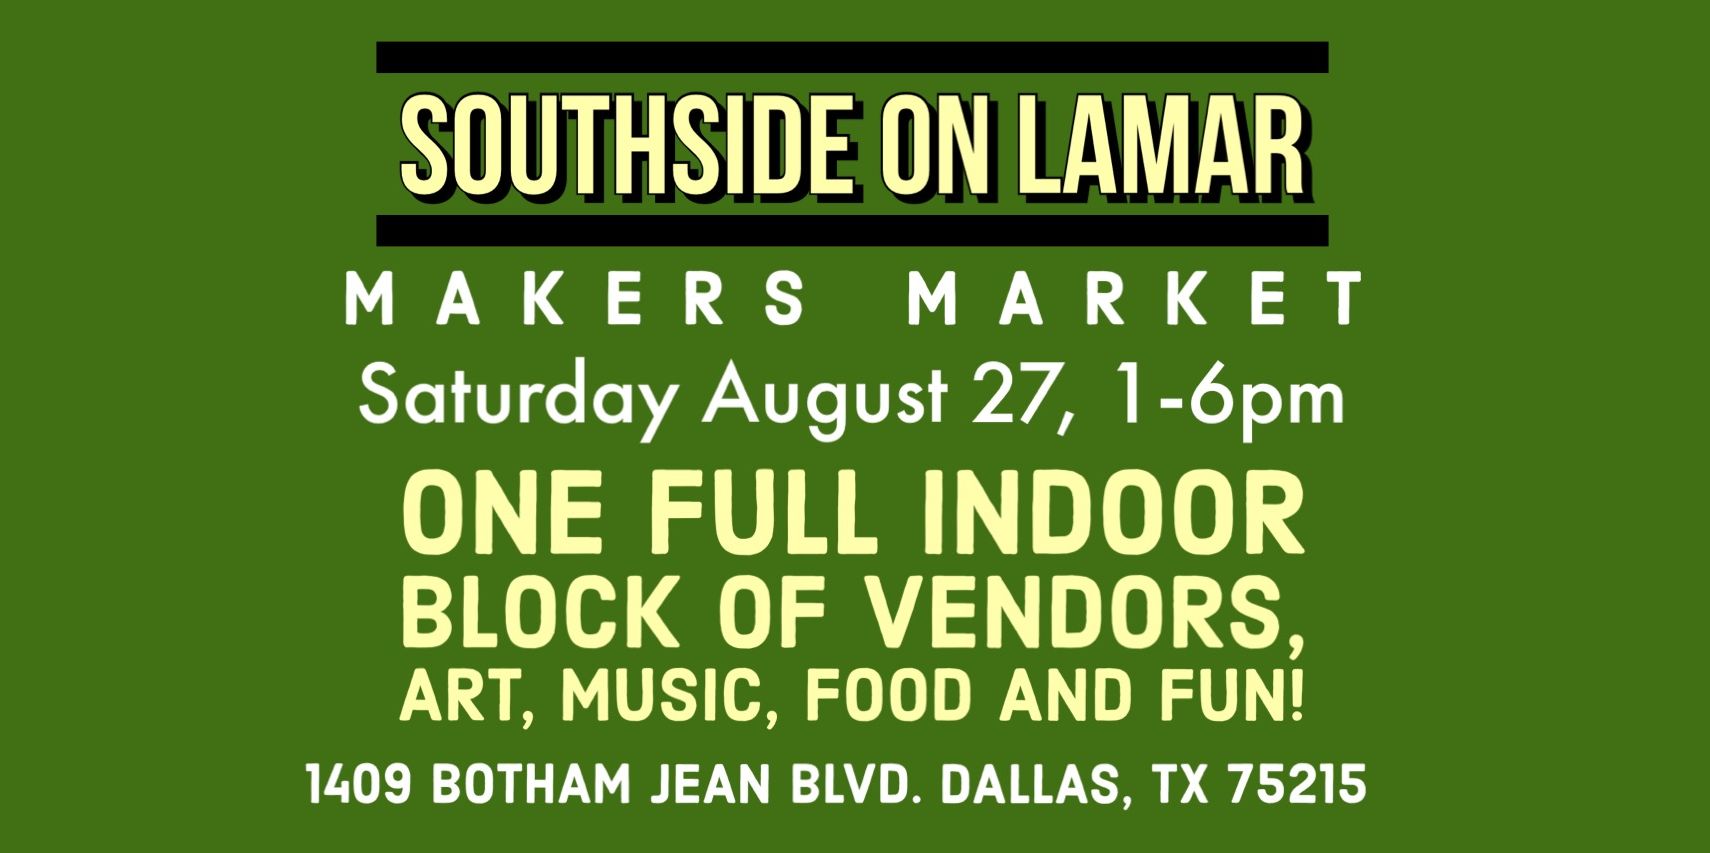 Southside on Lamar Makers Market promotional image